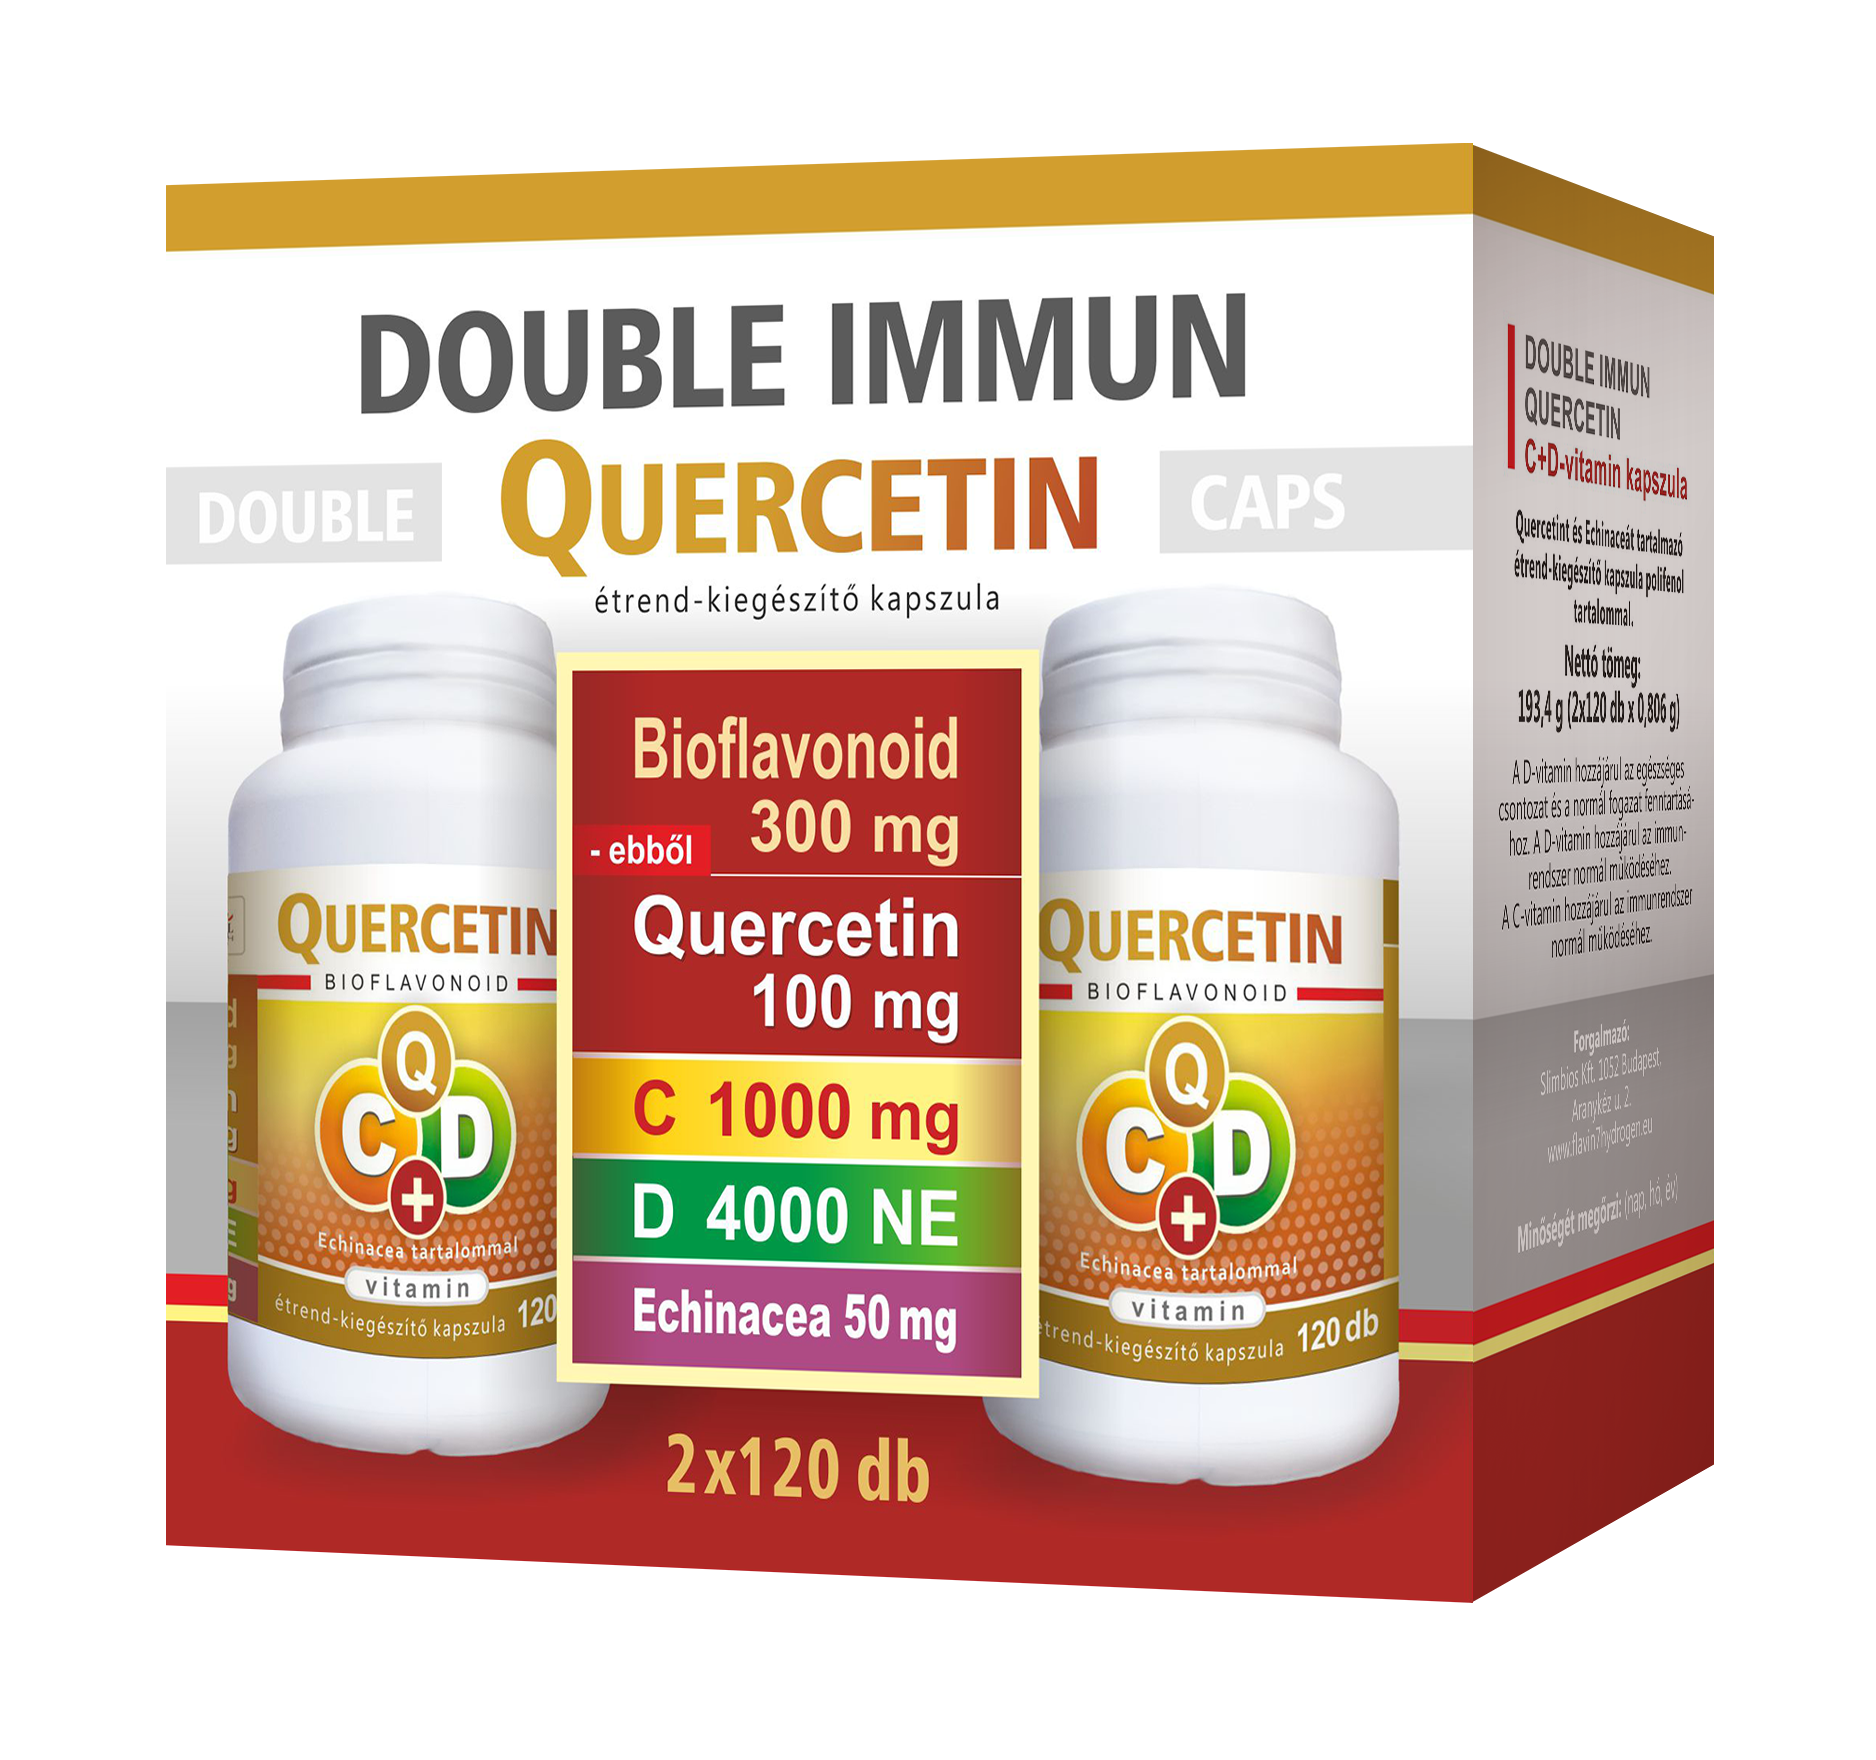 Double Immun Quercetin C+D Echinacea 2x120 caps.